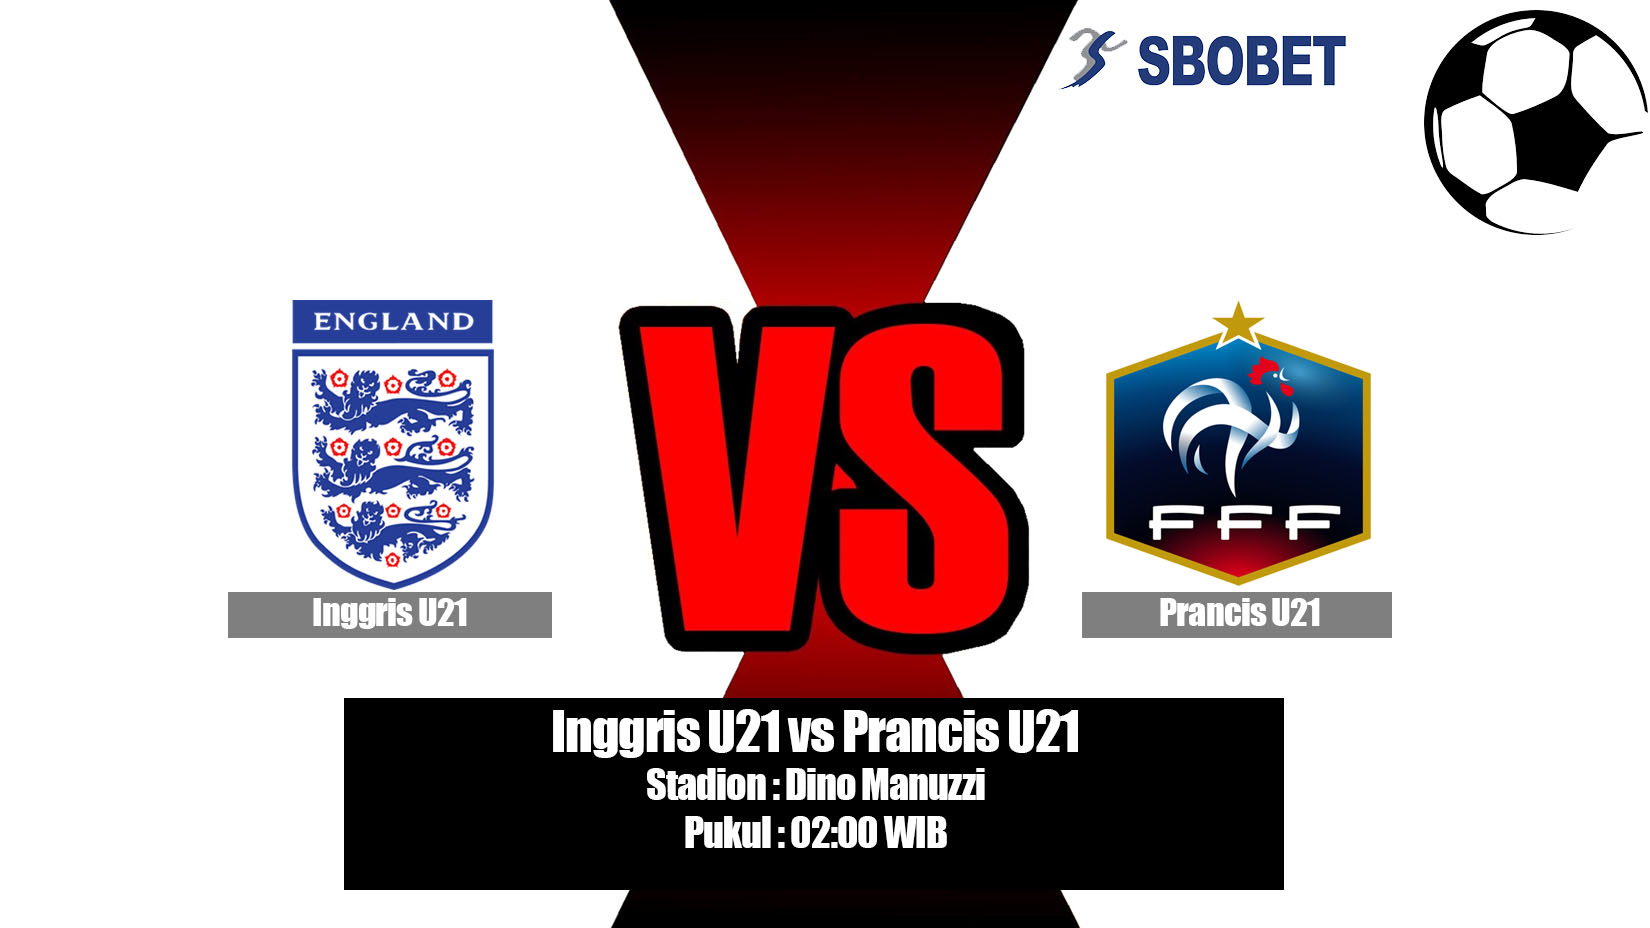 Prediksi Bola Inggris U21 vs Prancis U21 19 Juni 2019